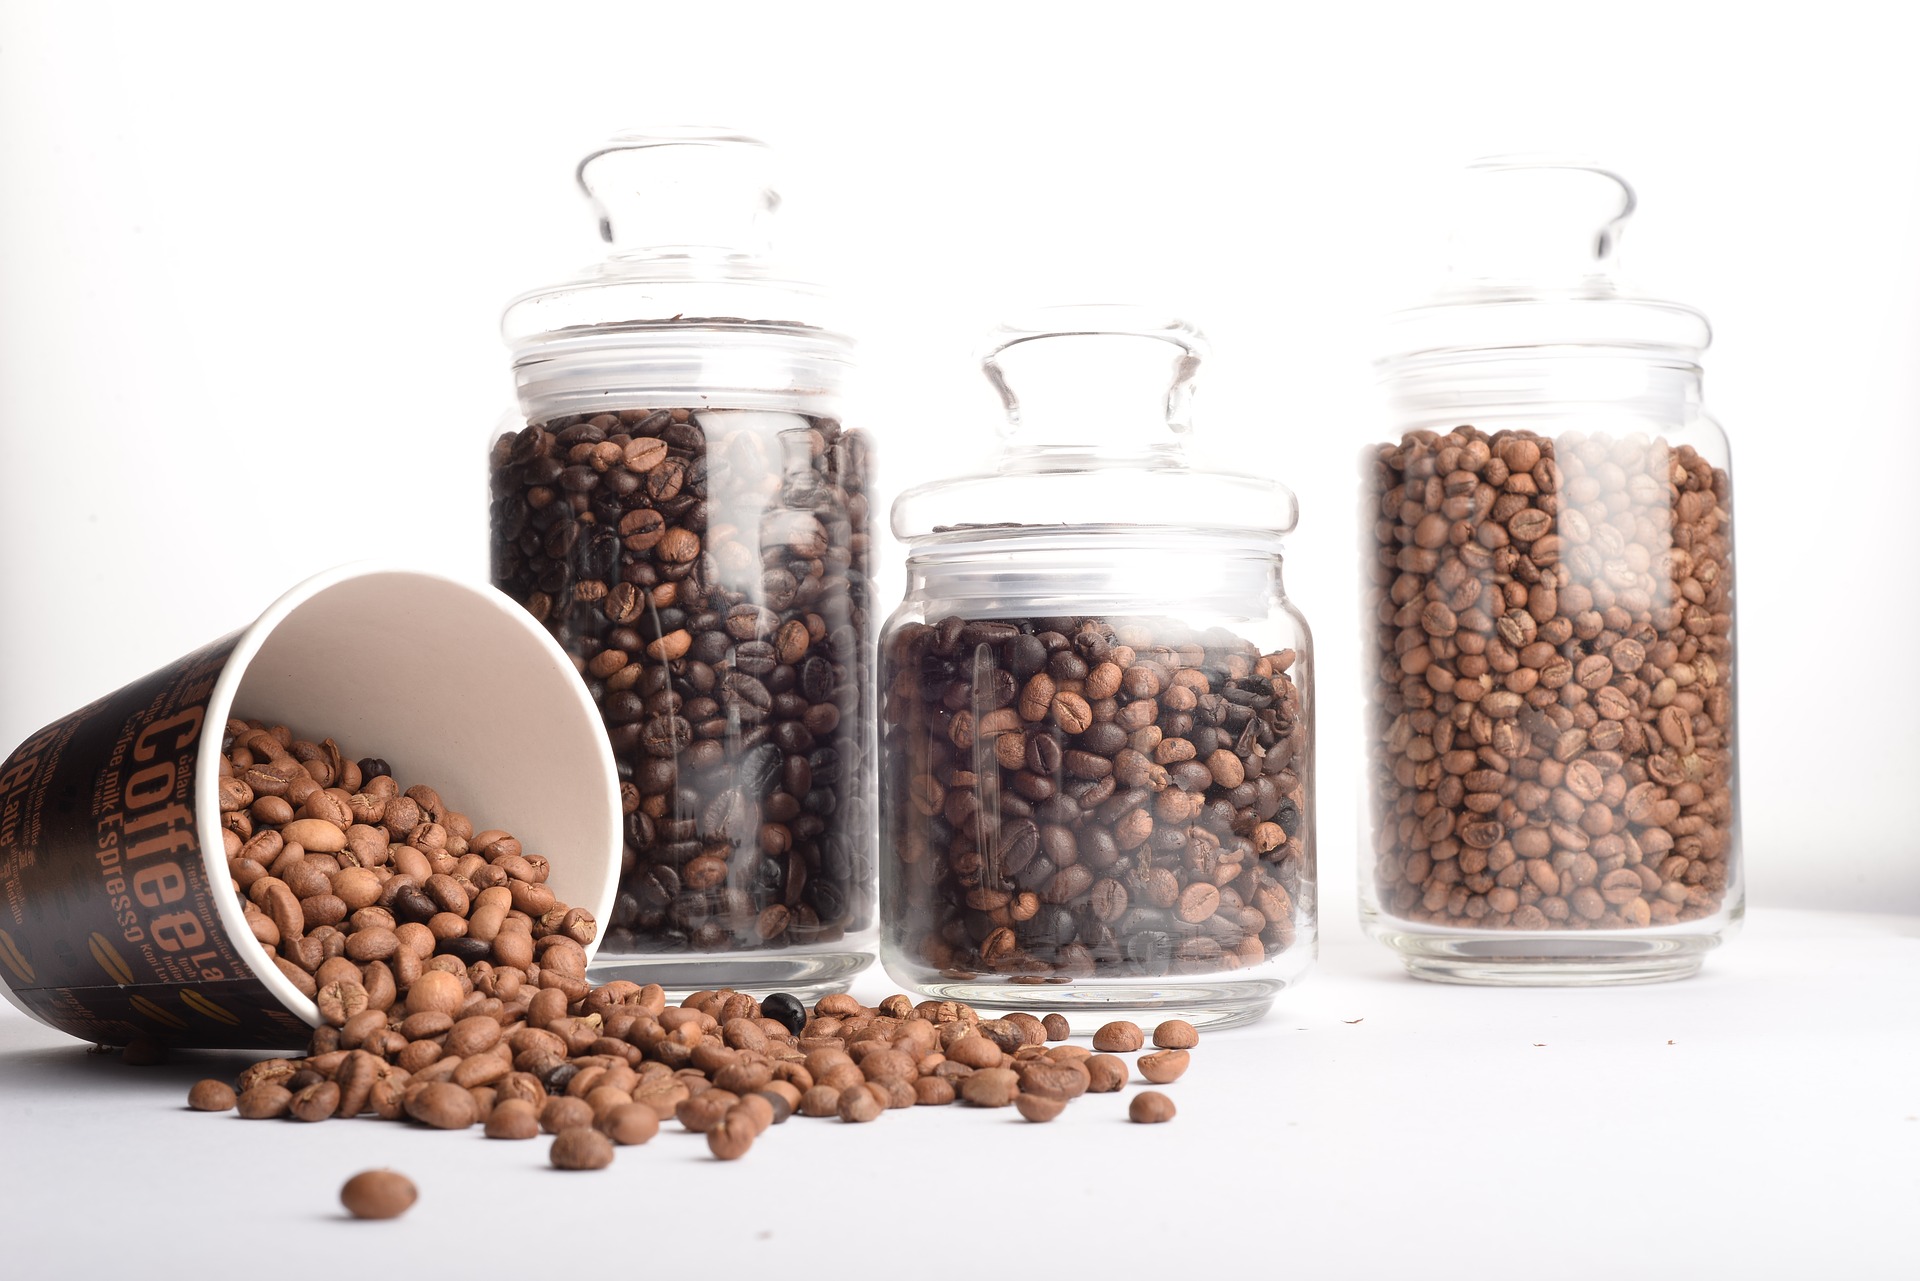 Обжарка кофе в домашних условиях: важные правила жареного кофе в зернах